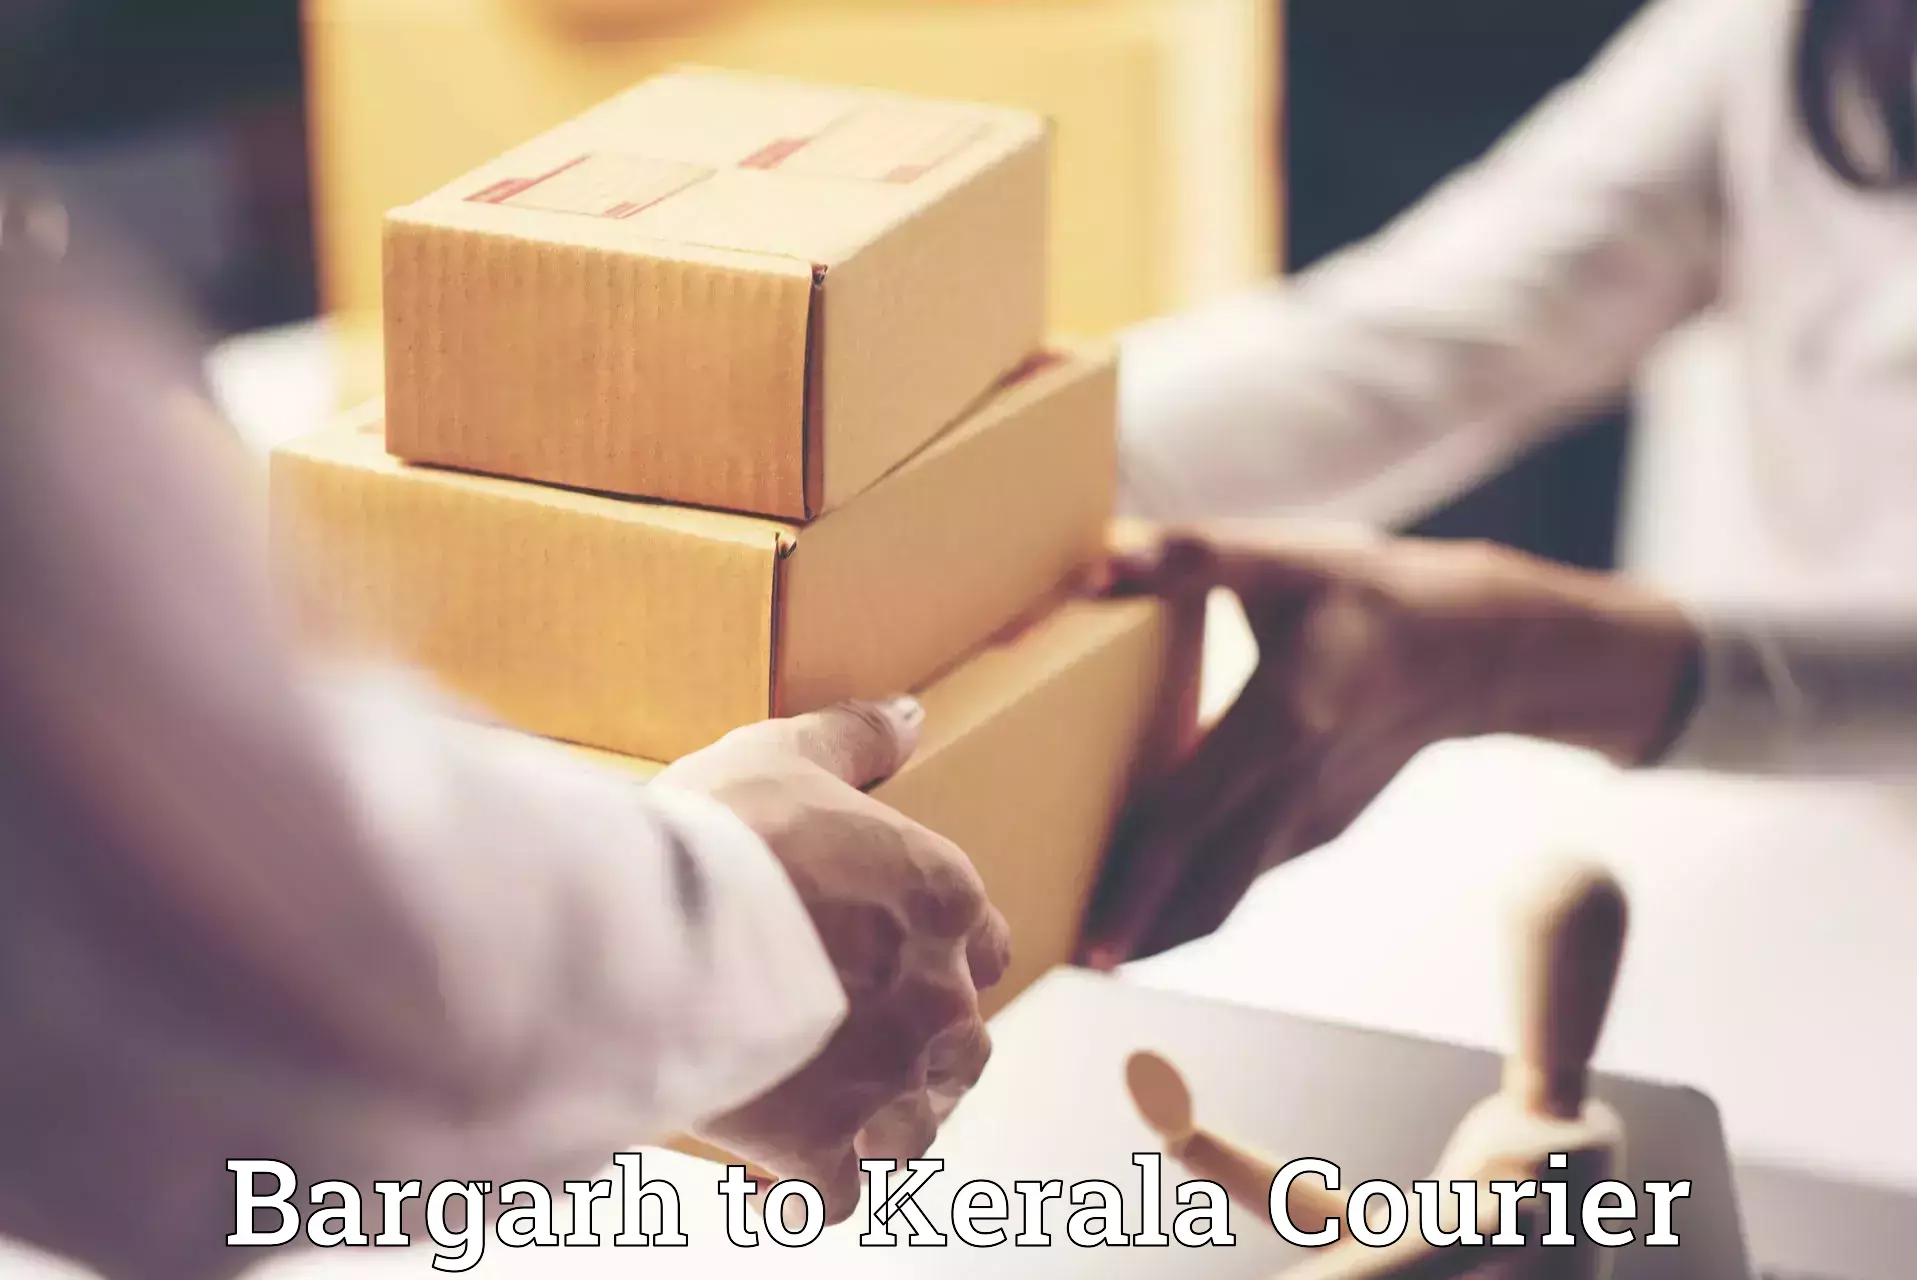 Furniture moving experts Bargarh to Kerala